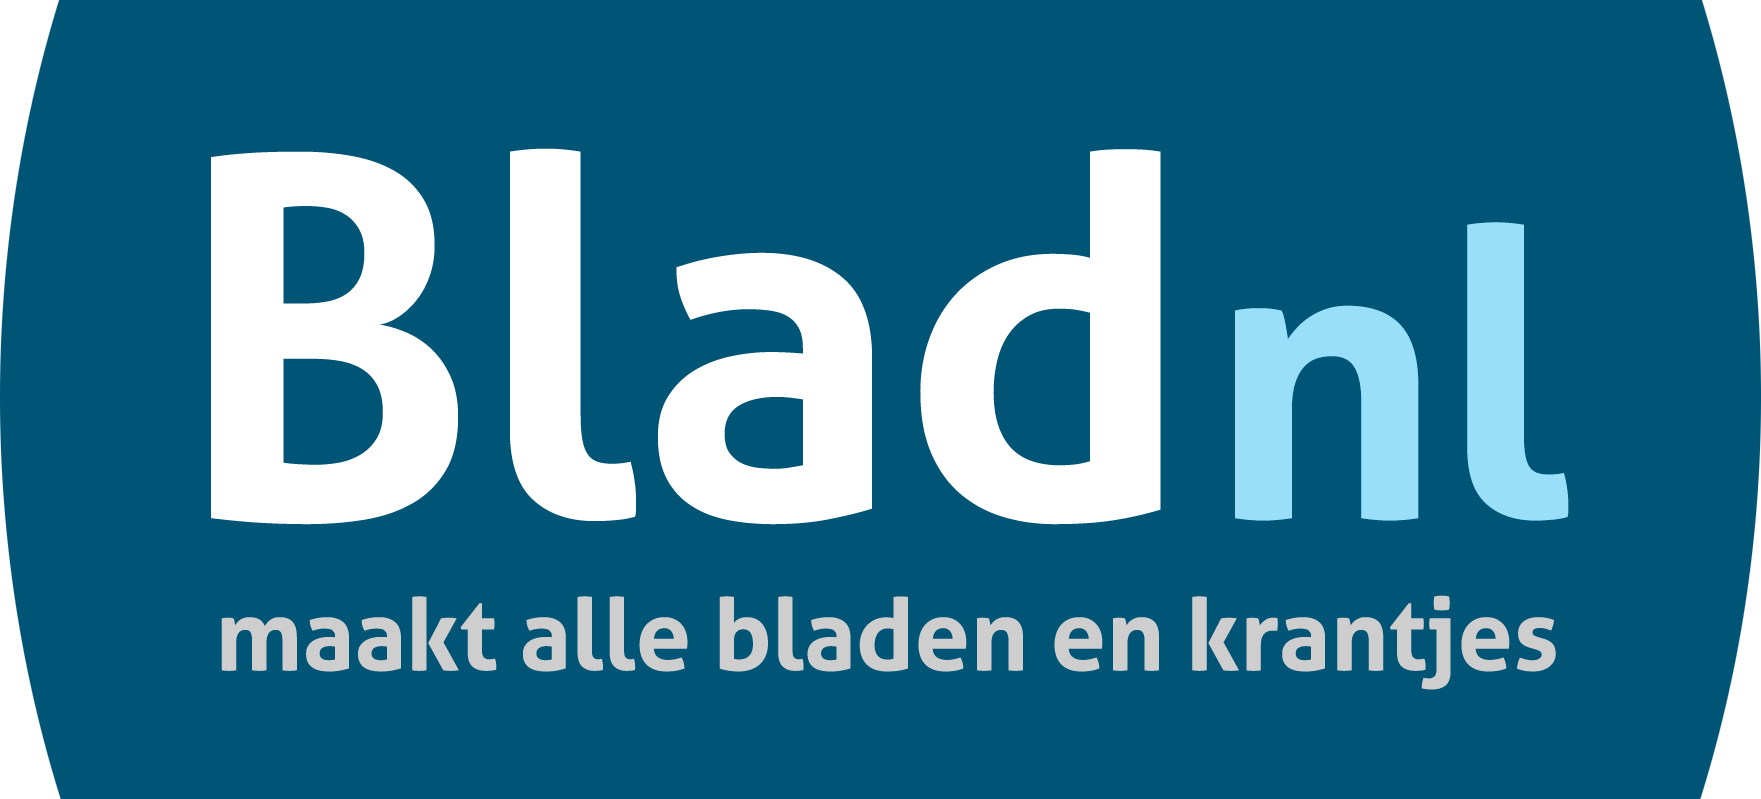 (c) Bladnl.nl